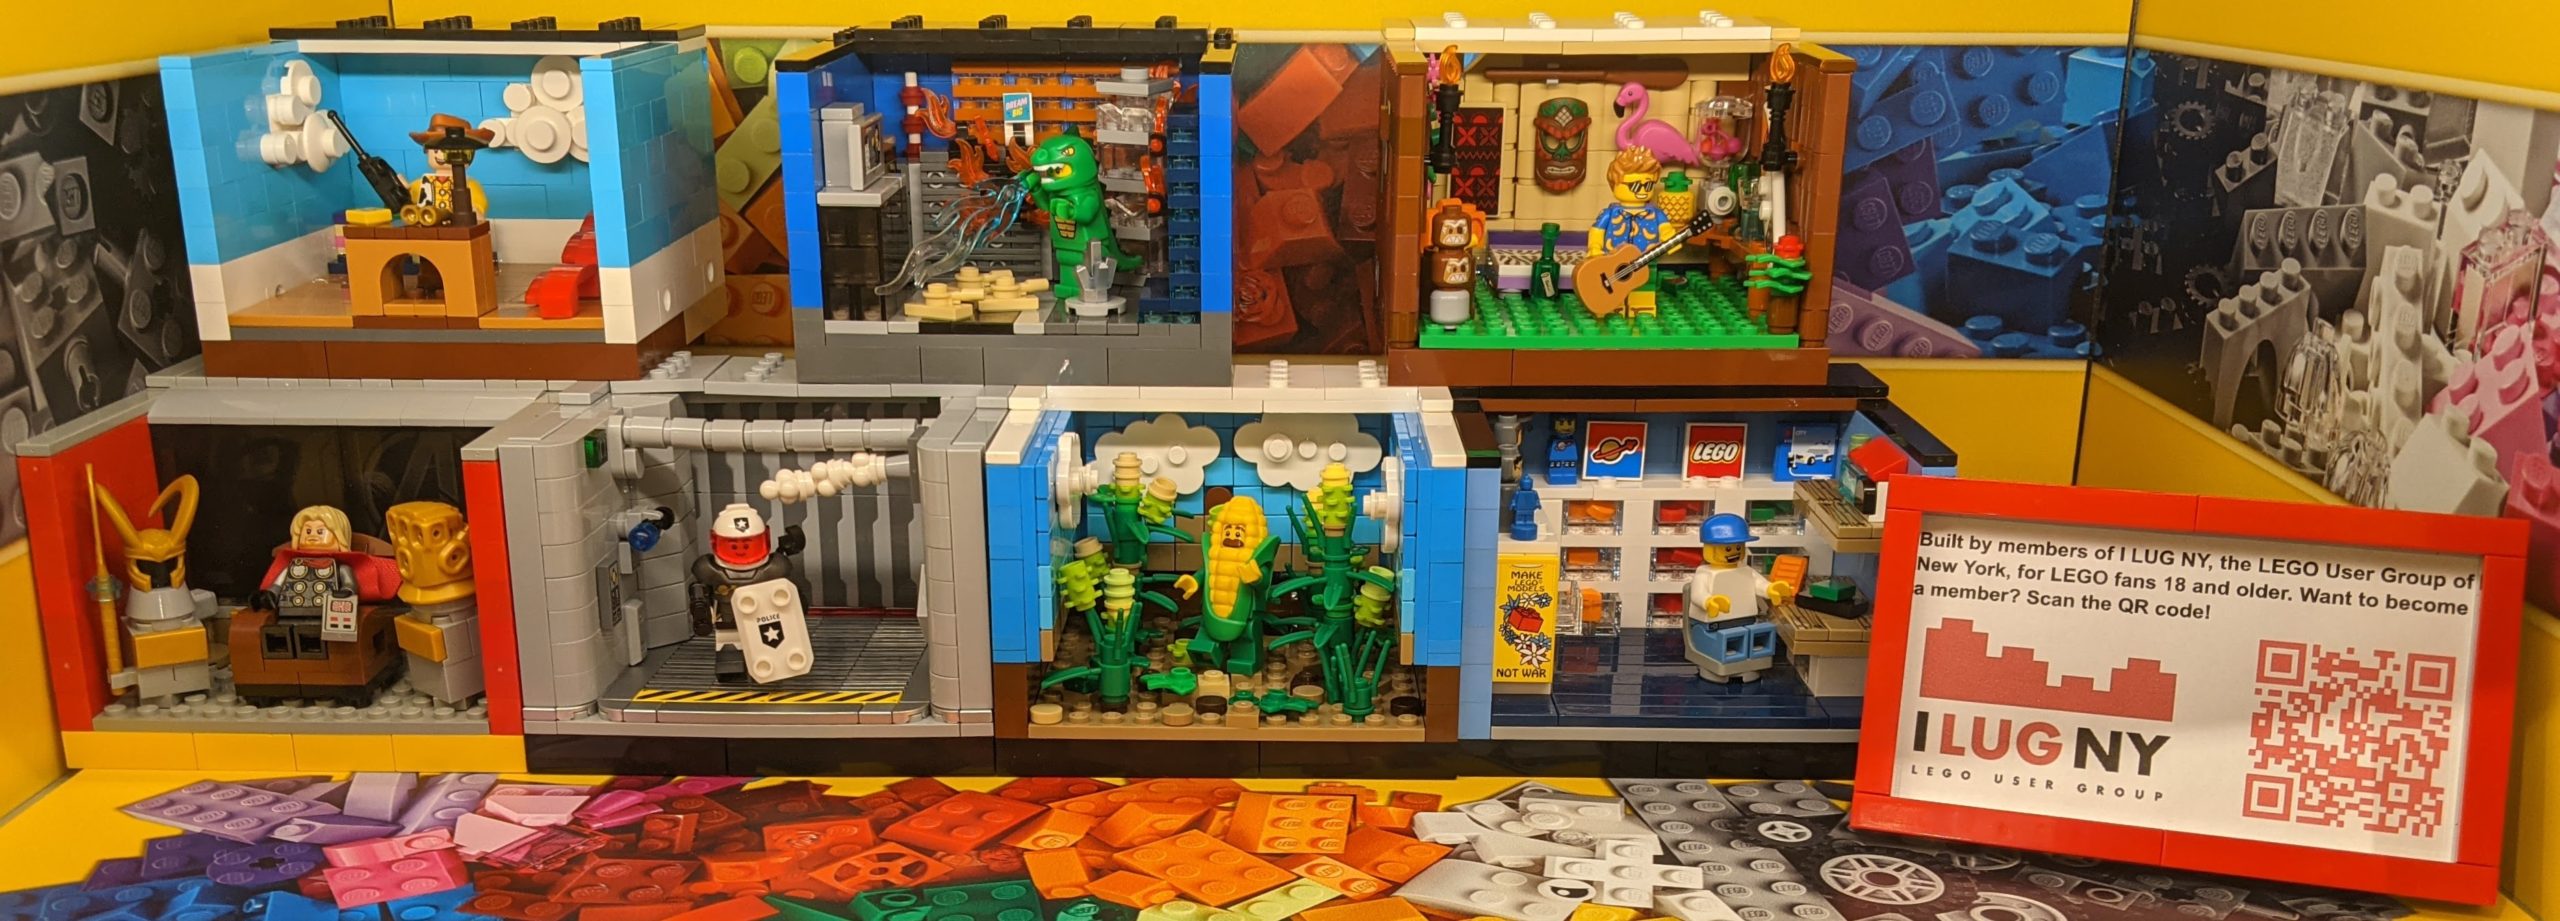 I LUG NY Window Display at LEGO Store, Lake Grove, NY